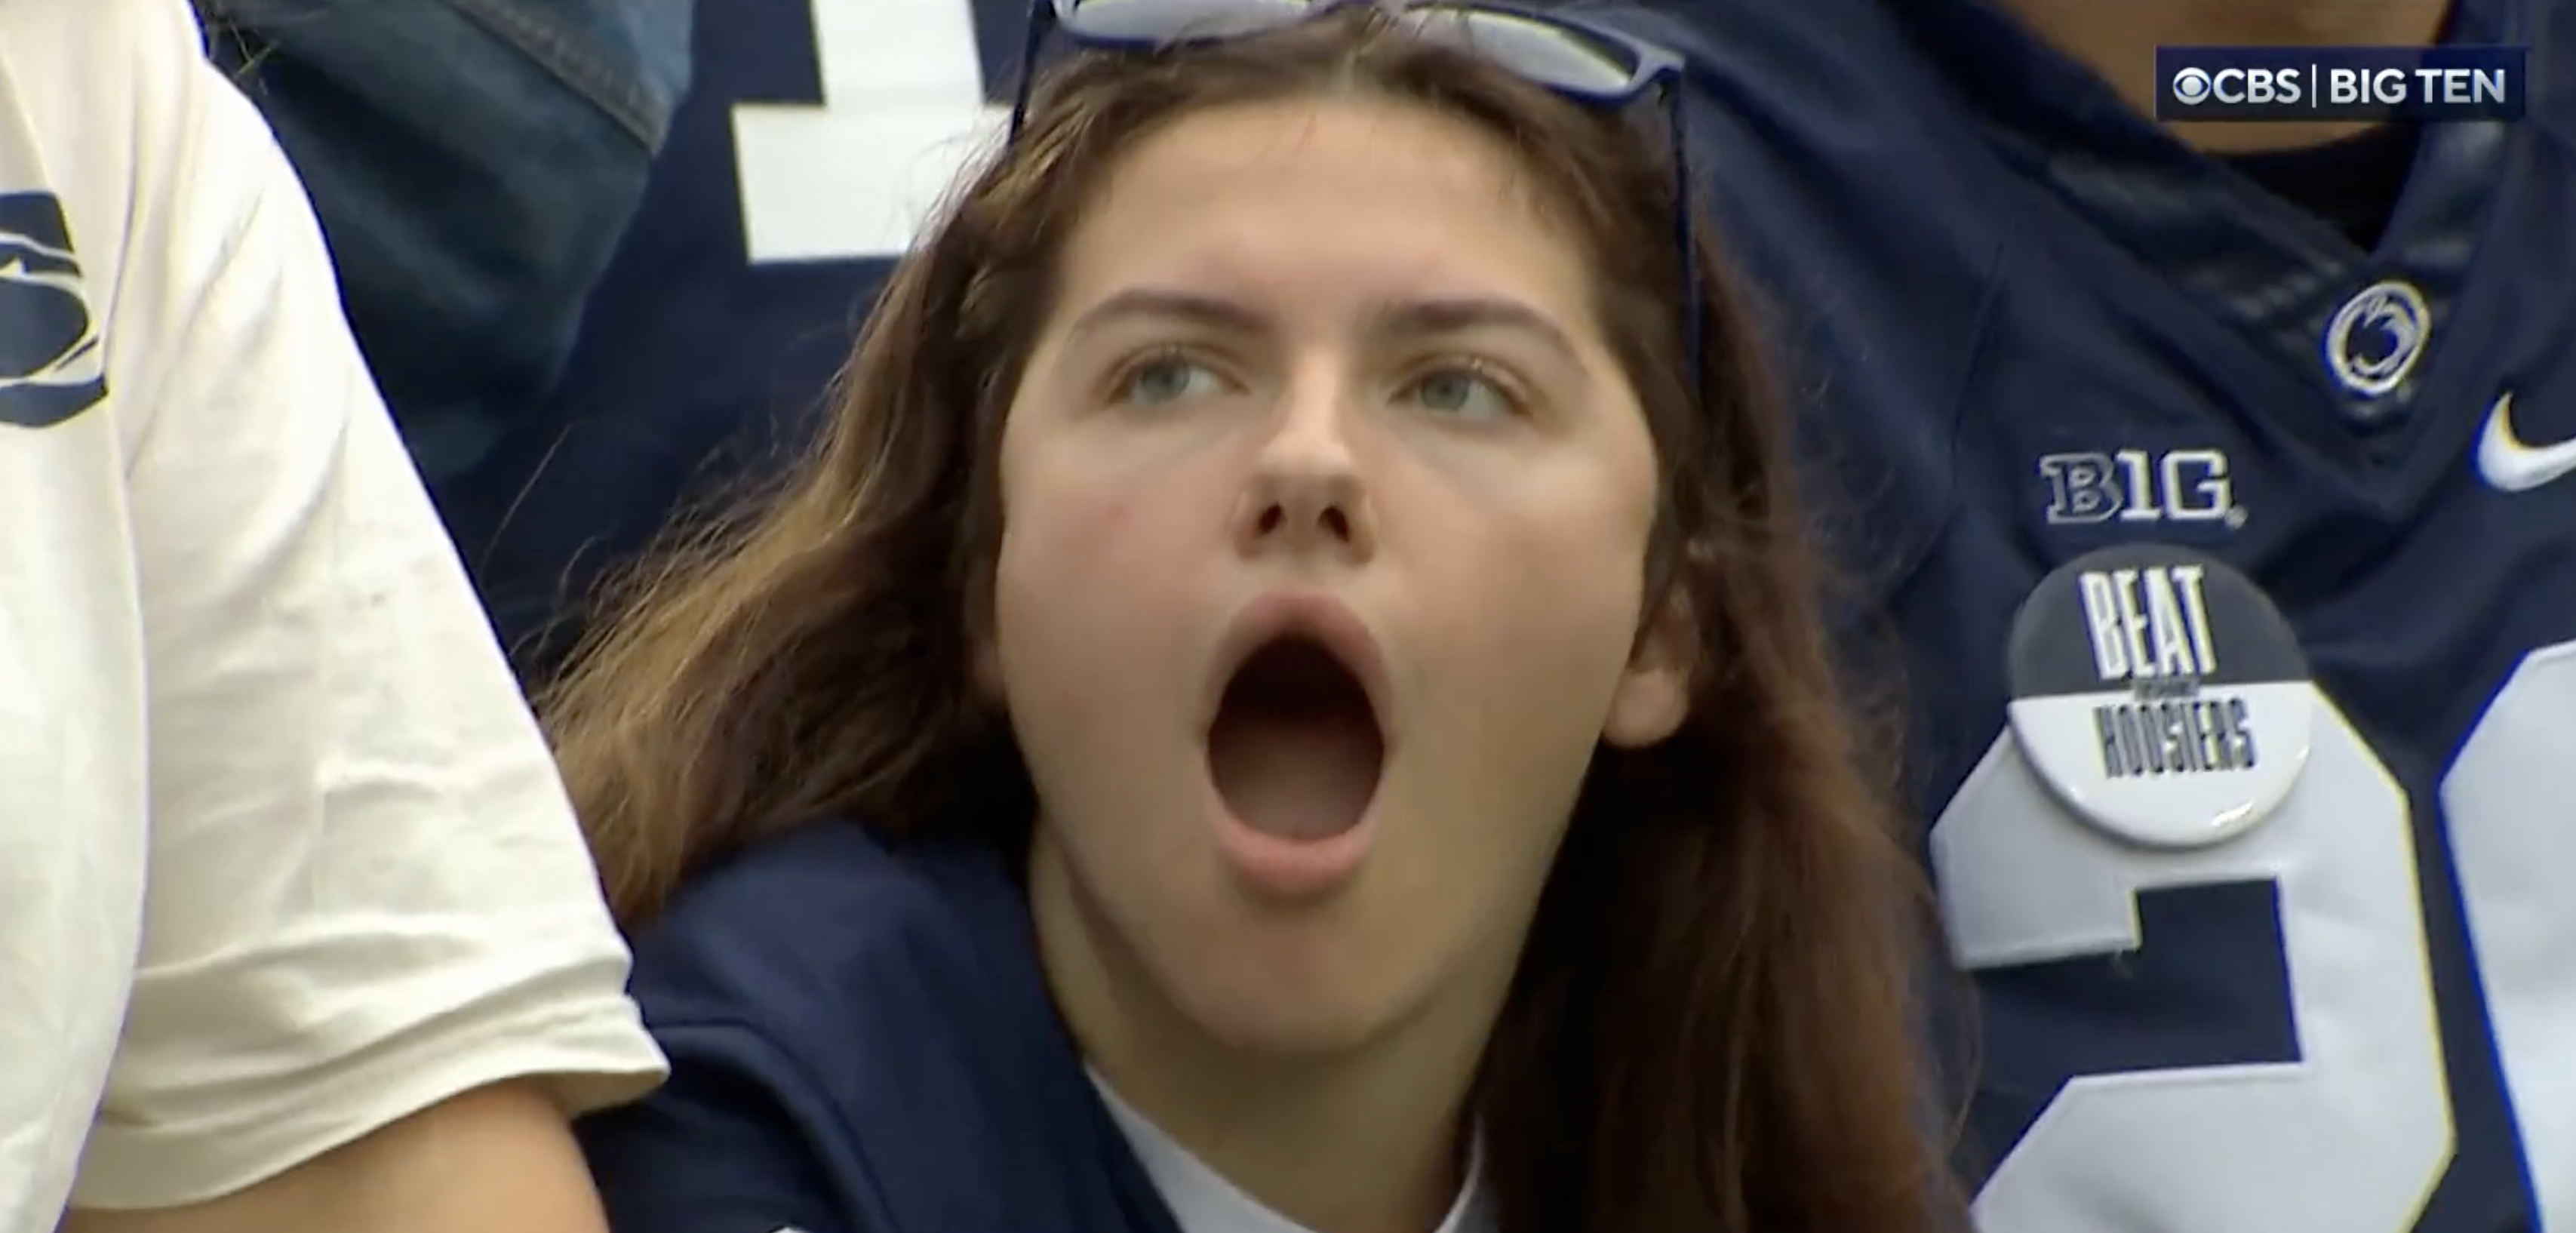 Penn State fan reaction